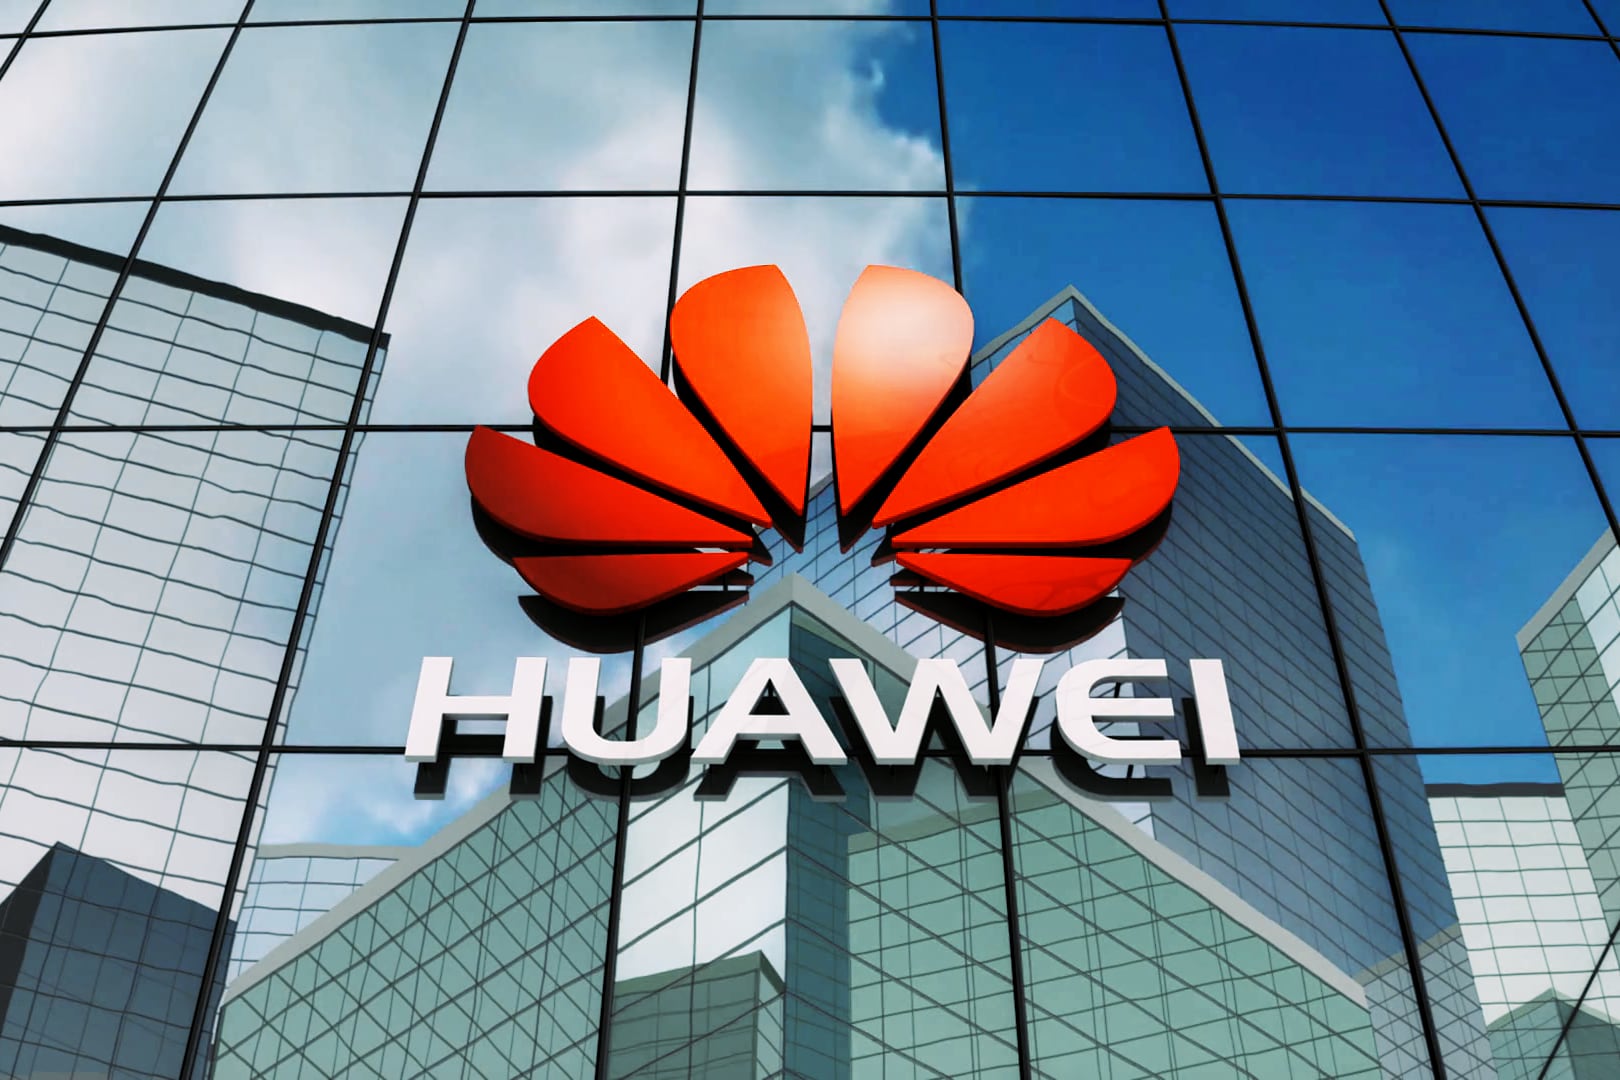 Les États-Unis ont interdit la vente et l'importation d'équipements Huawei et ZTE par crainte d'espionnage des Américains.